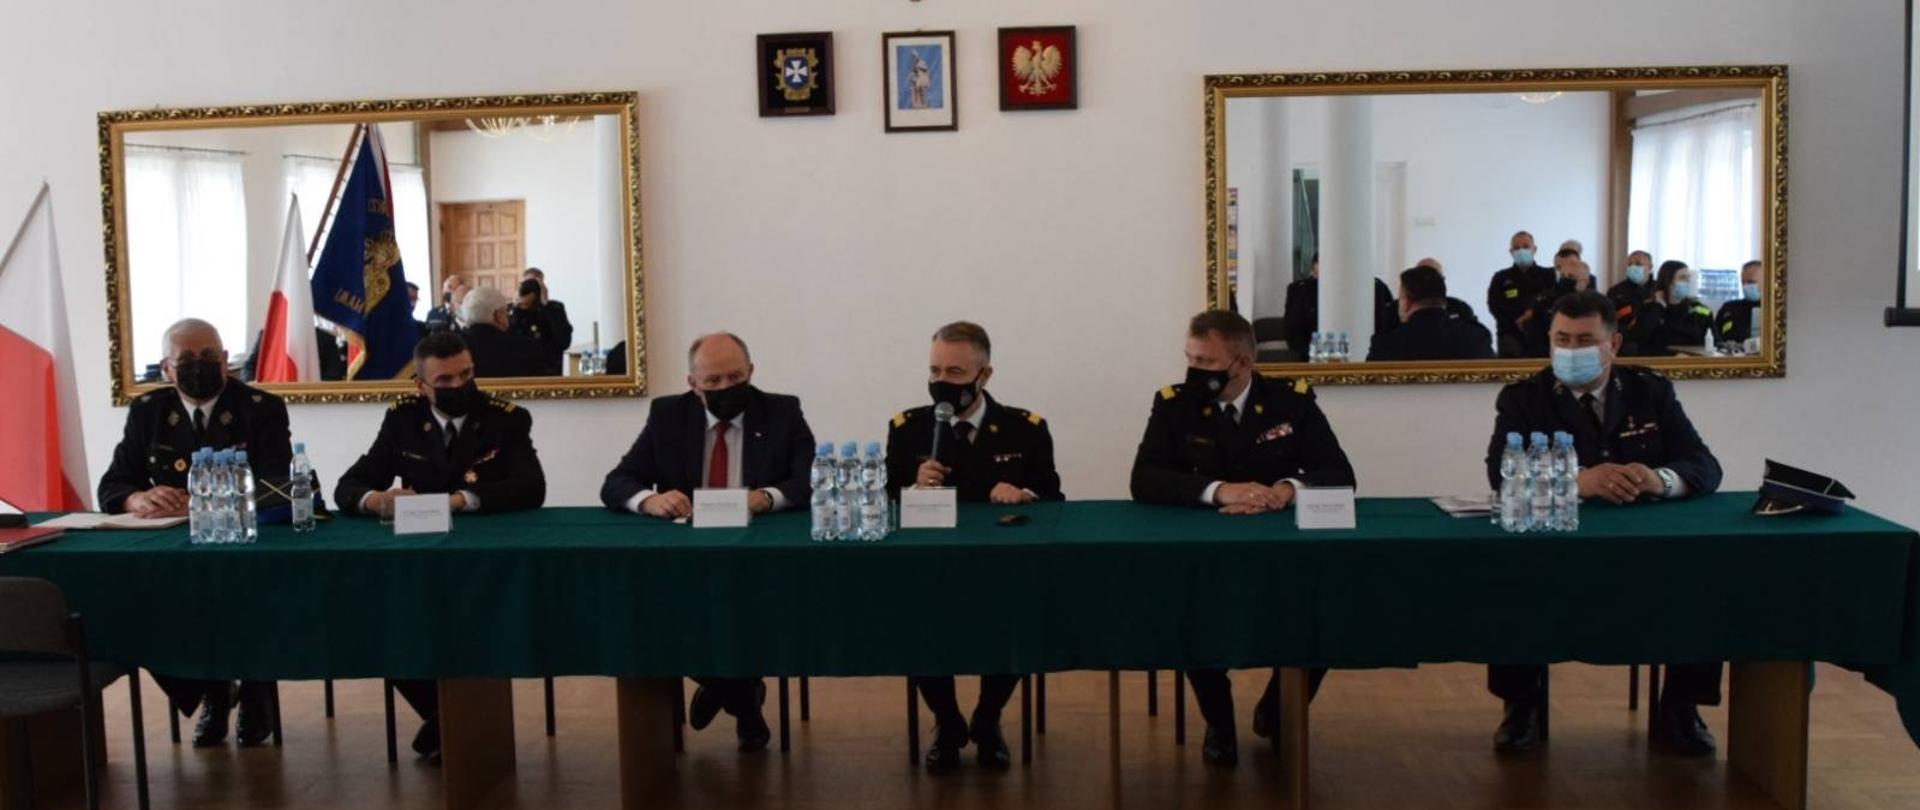 6 mężczyzn (prowadzący konsultacje) siedzą przy stole podczas konsultacji projektu Ustawy o Ochotniczej Straży Pożarnej z udziałem Komendanta Głównego PSP - siedziba Ochotniczej Straży Pożarnej Rzeszów - Zalesie (woj. podkarpackie)